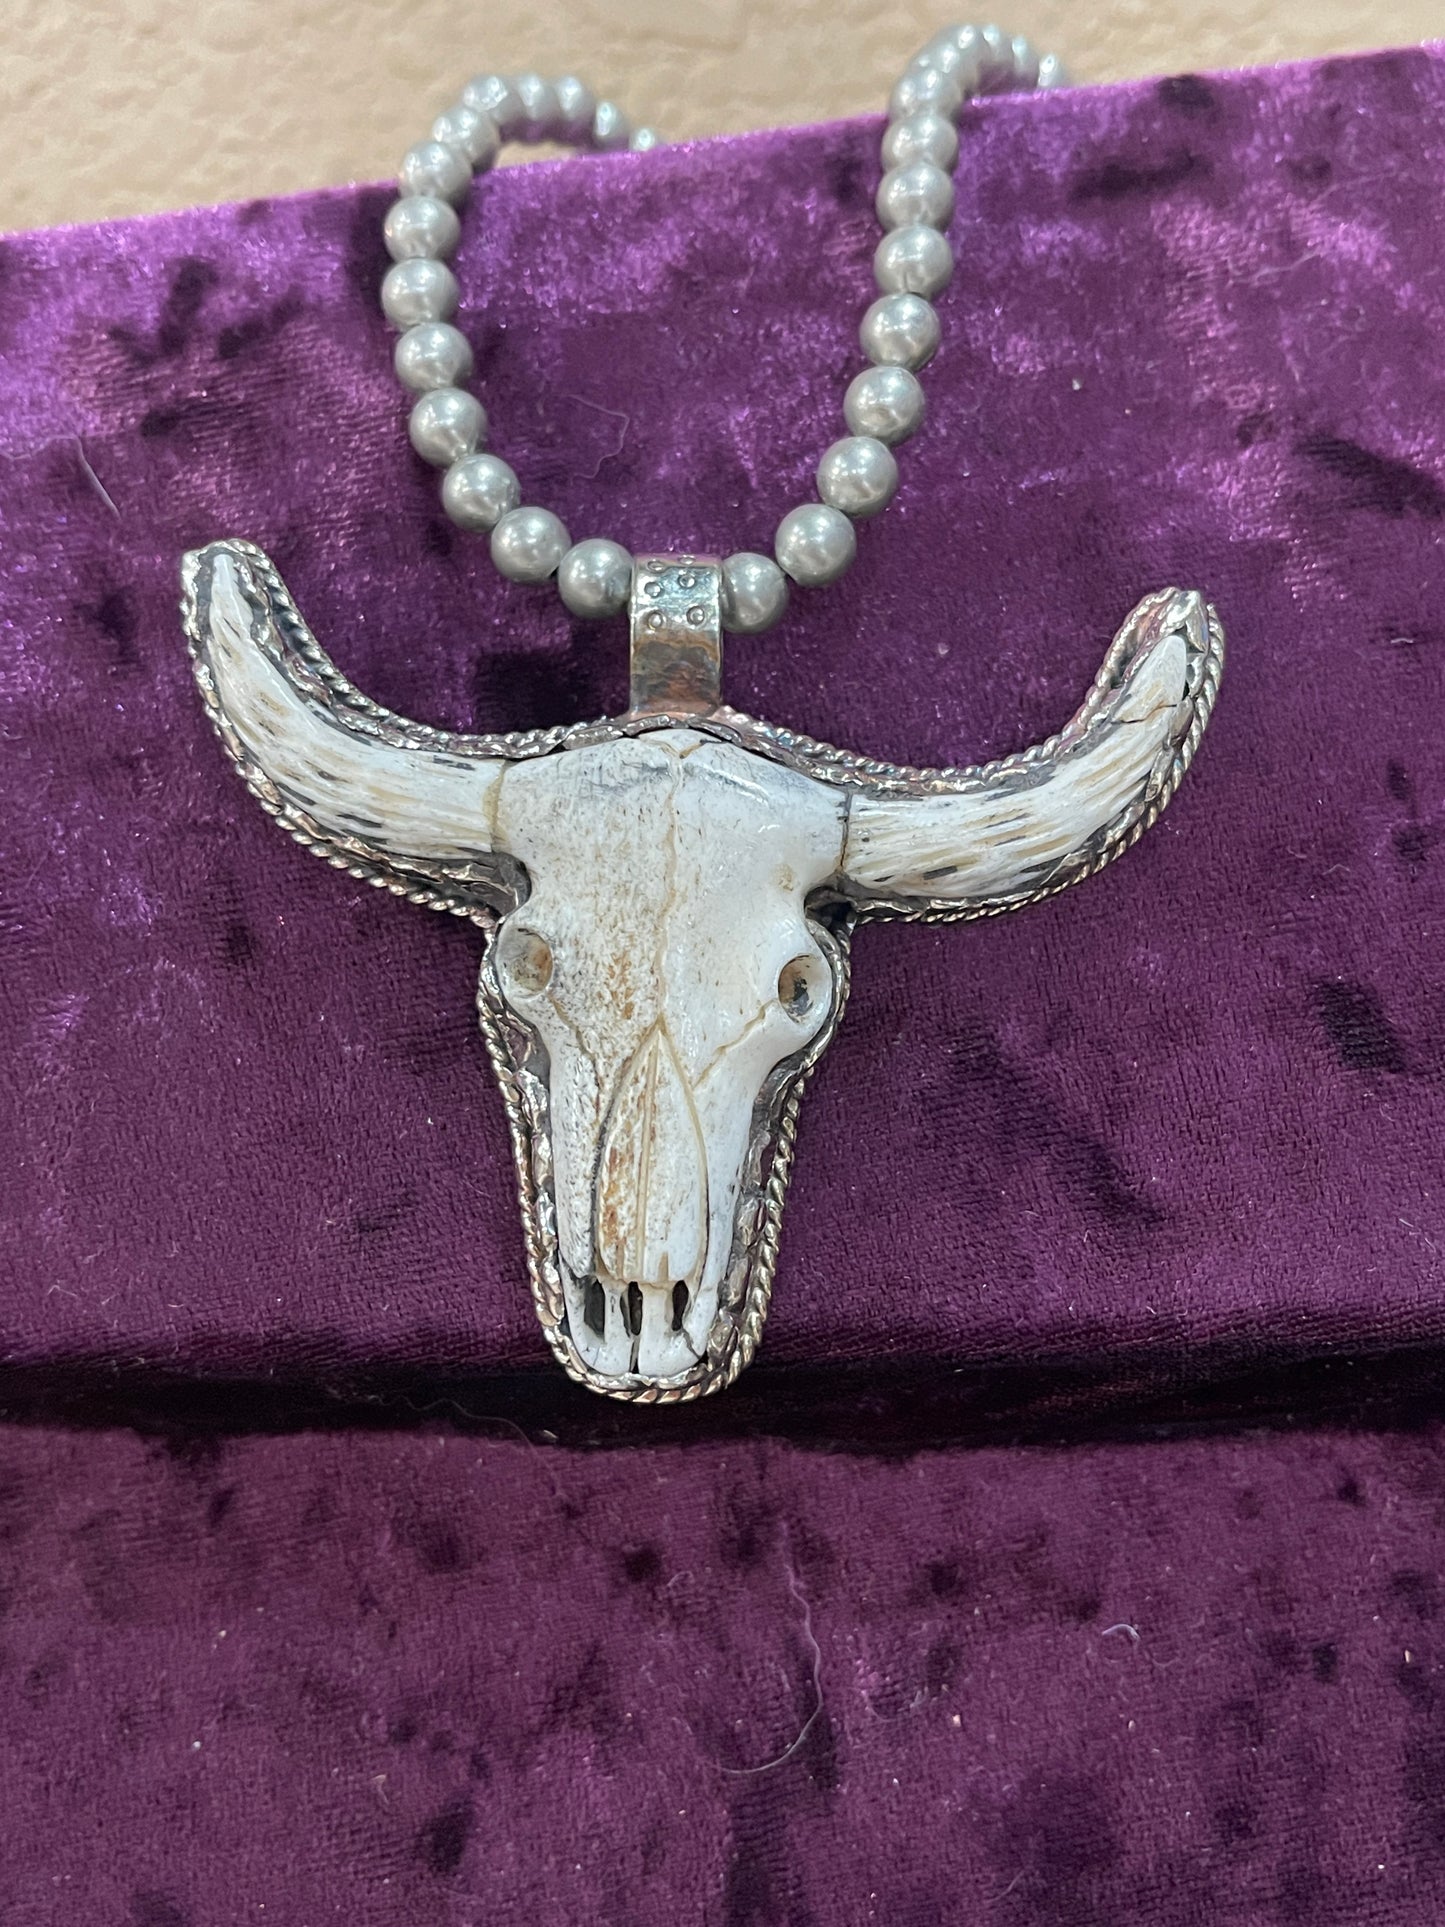 Tibetan skull pendant